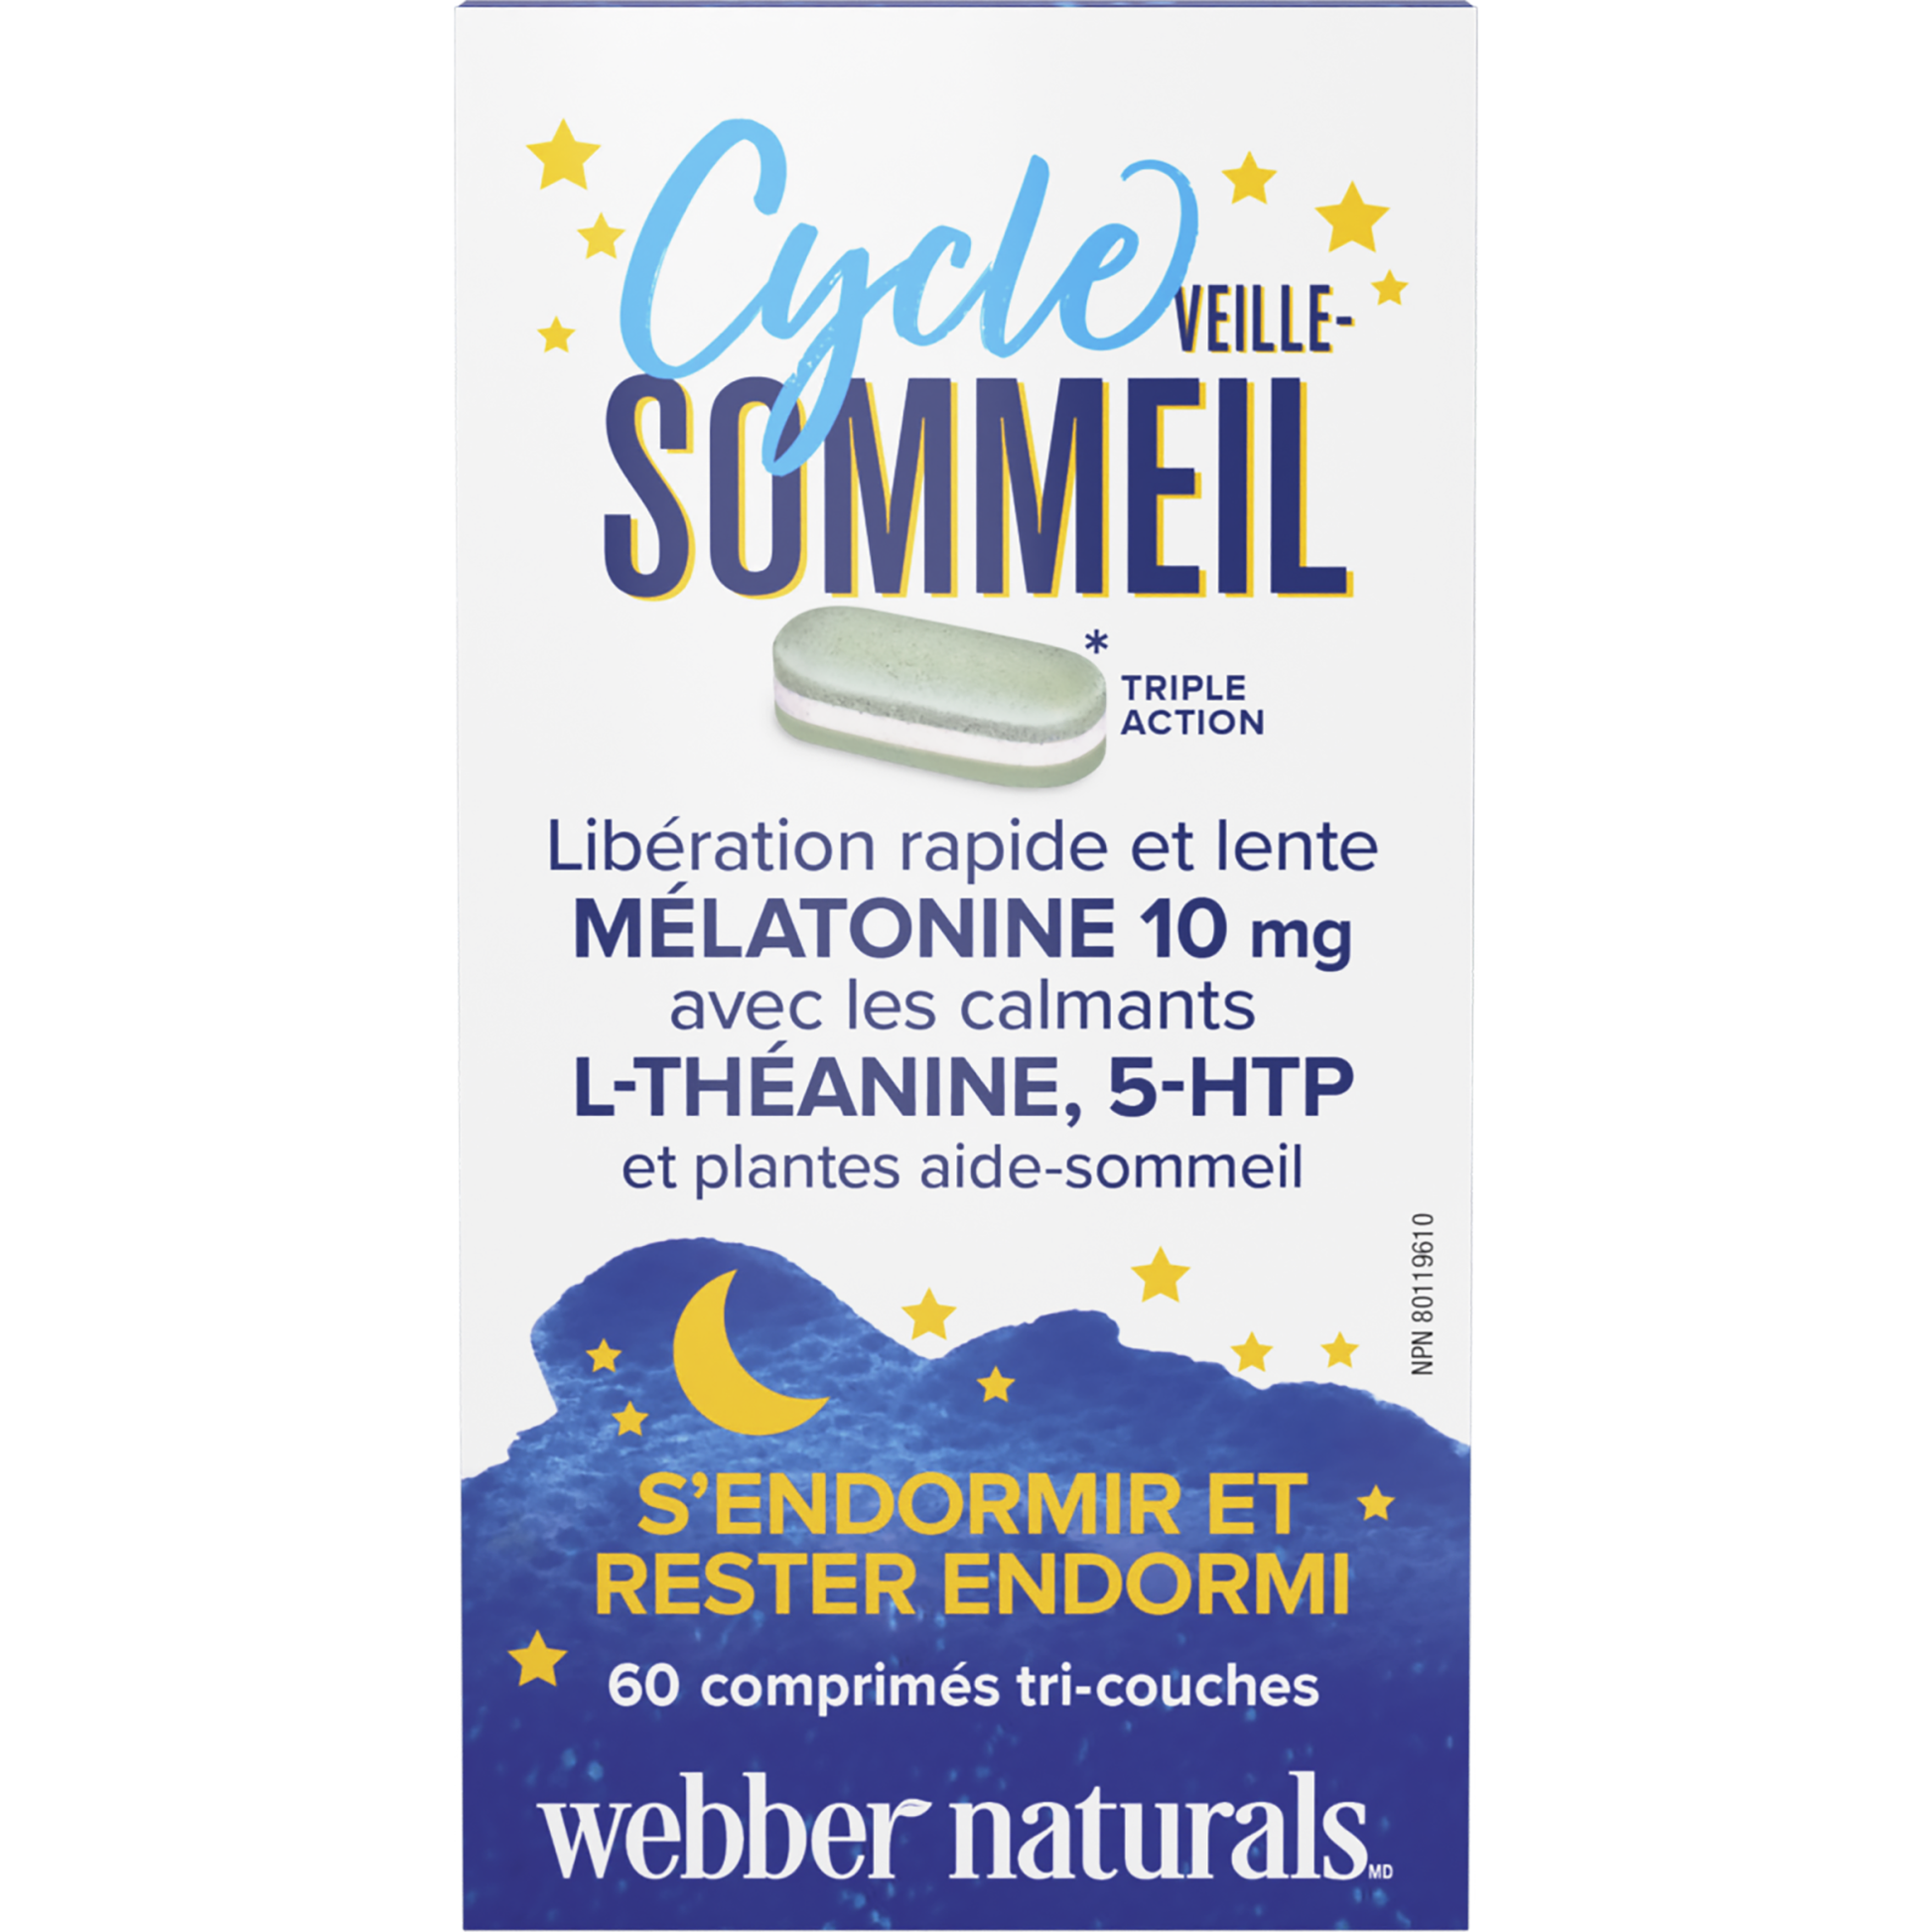 Cycle veille-sommeil Mélatonine avec L-théanine, 5-HTP et plantes aide-sommeil  for Webber Naturals|v|hi-res|WN3921